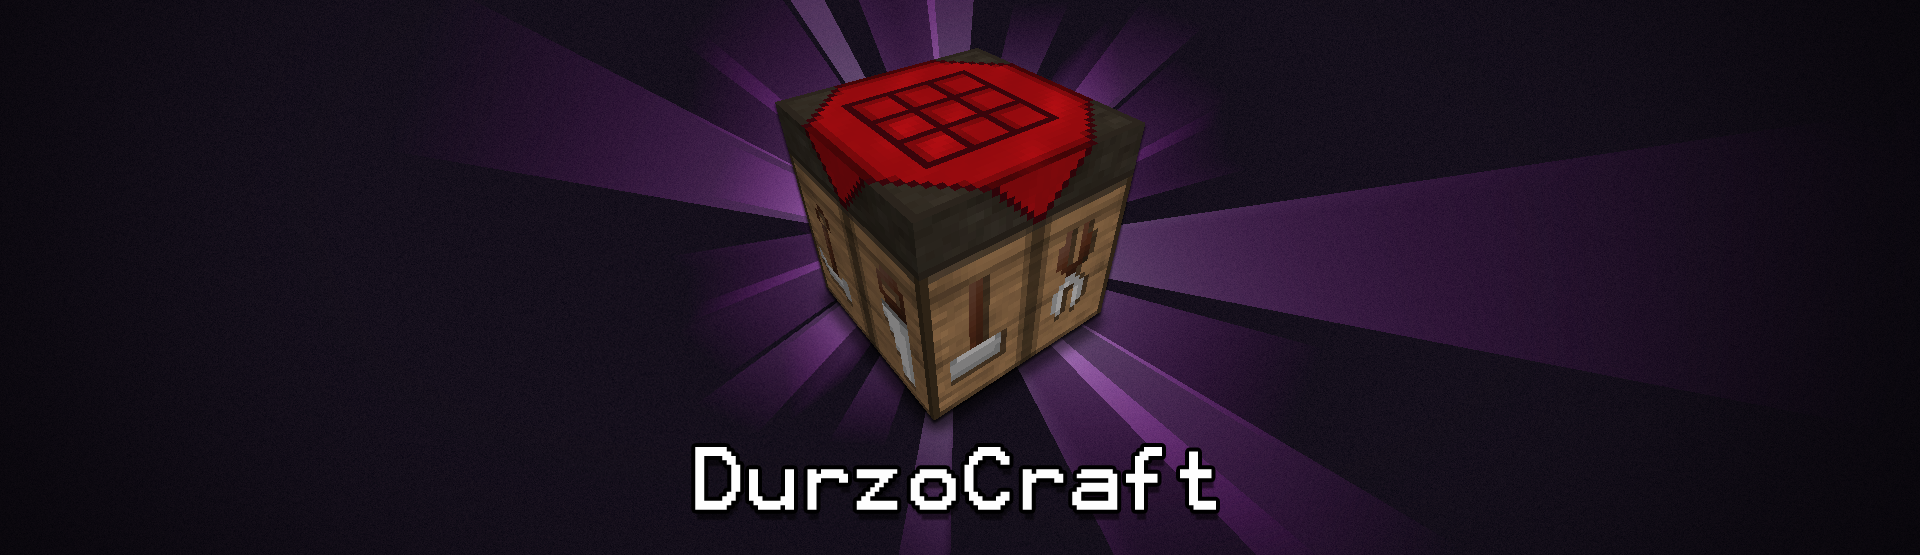 Durzocraft-resource-pack.jpg